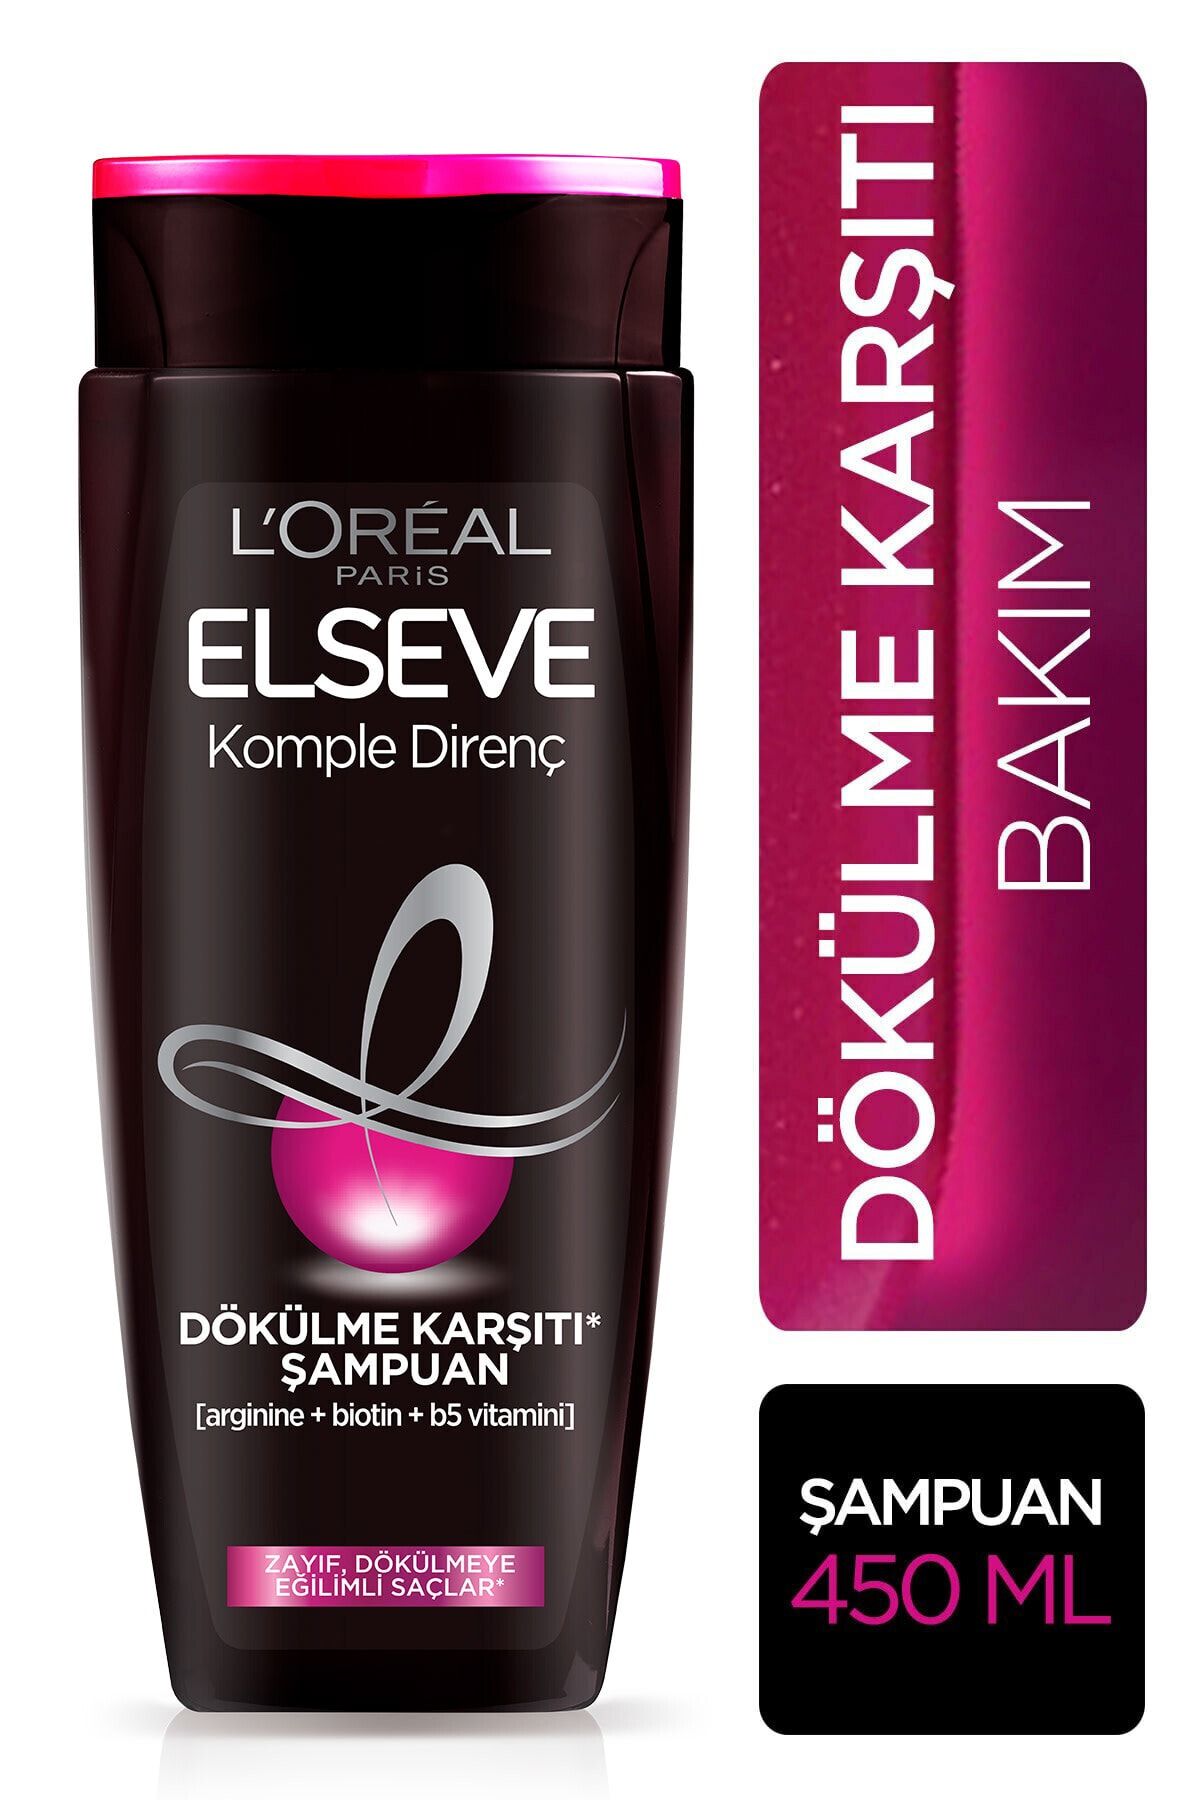 ELSEVE L'oréal Paris Komple Direnç Dökülme Karşıtı Şampuan 450 ml